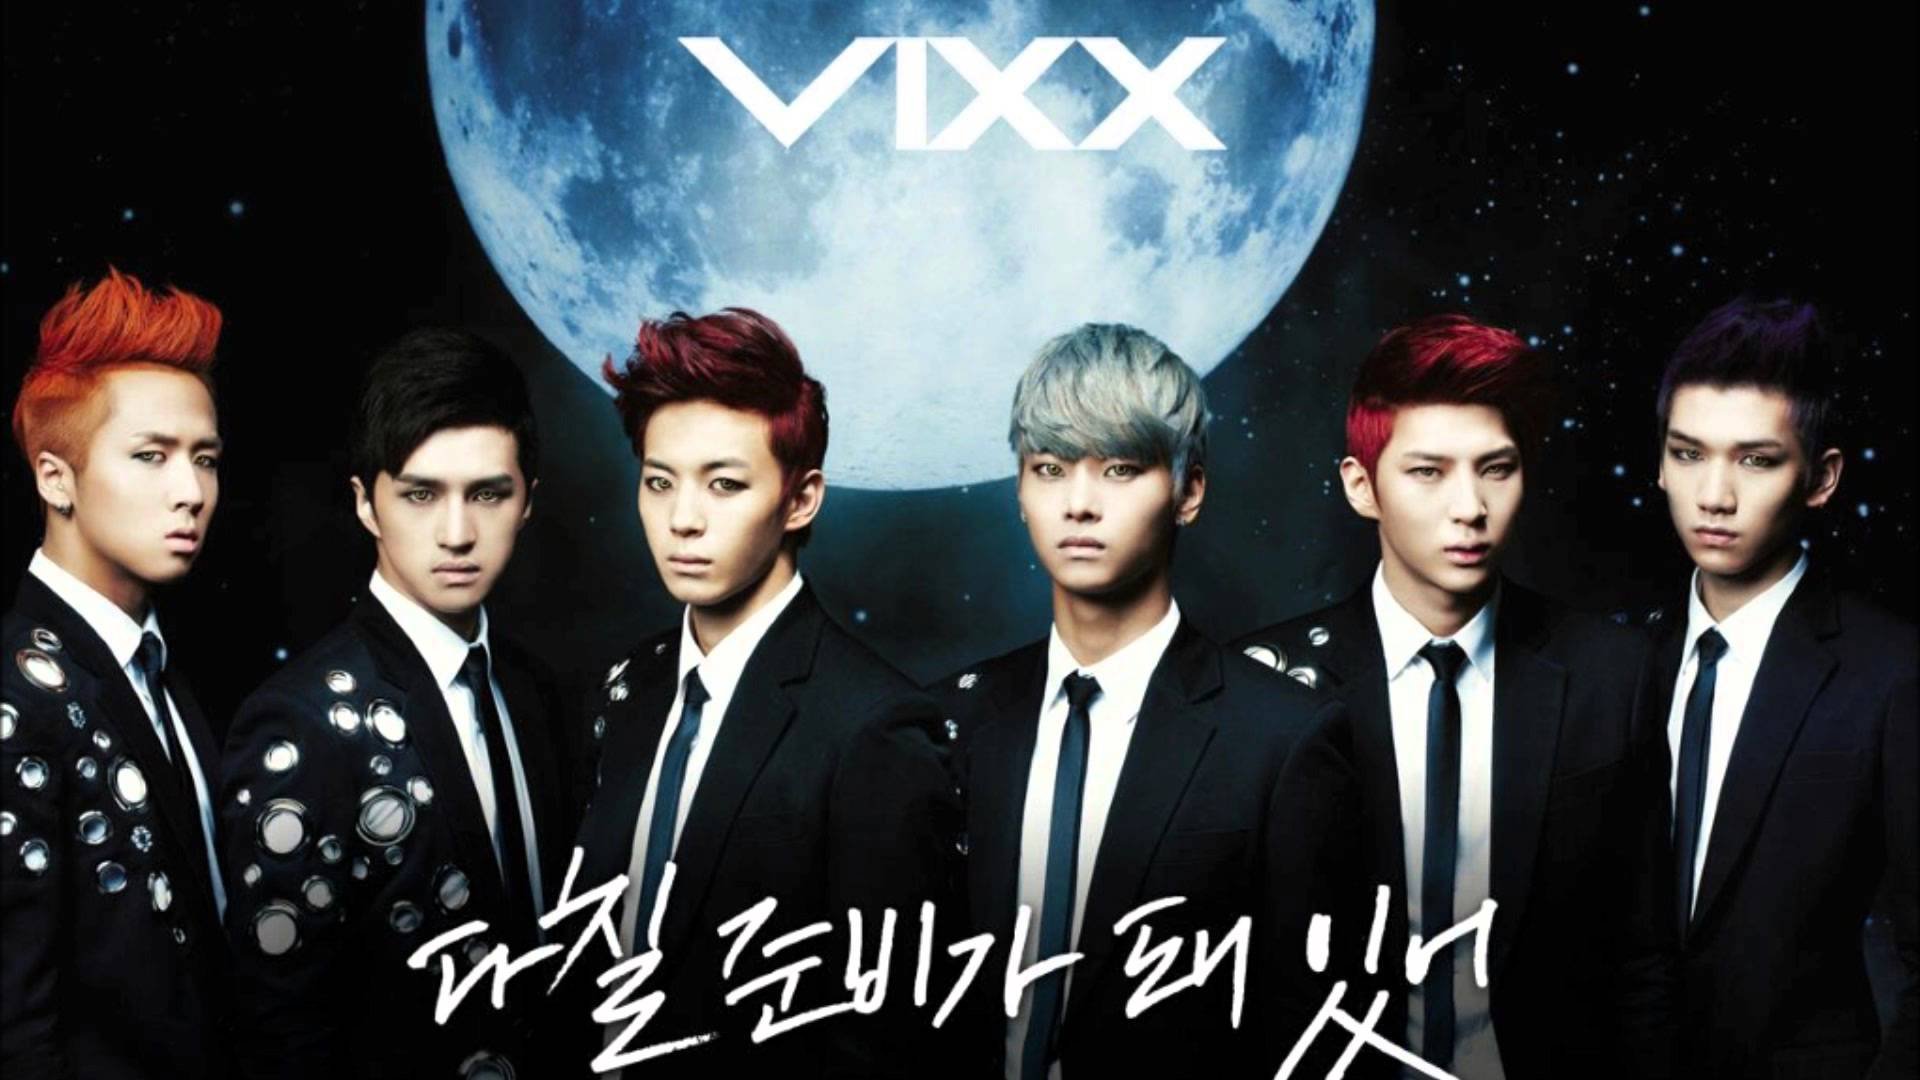 vixx, Kpop, K pop Wallpaper